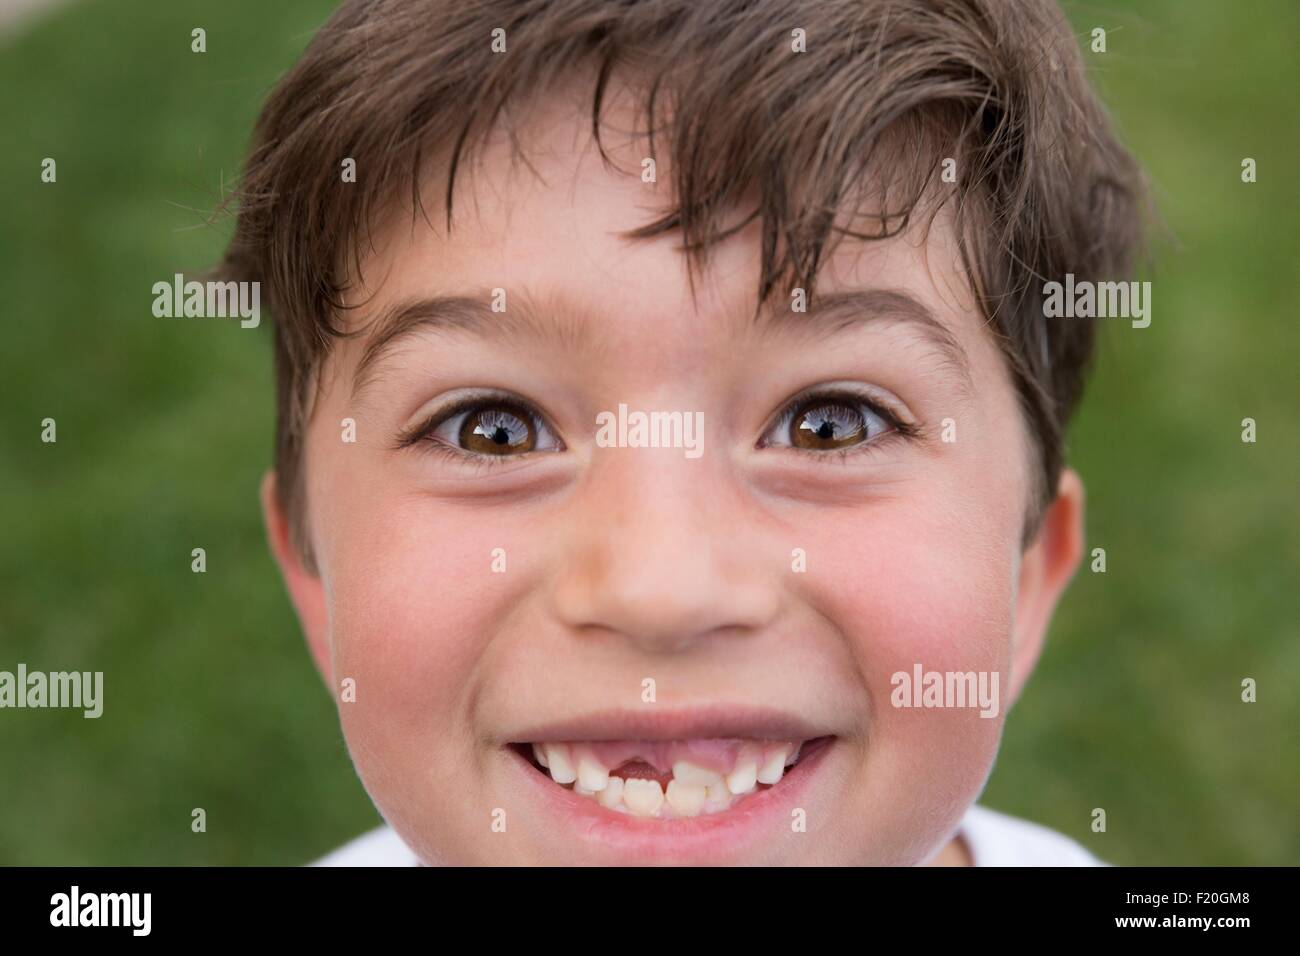 Portrait de jeune garçon souriant, montrant de gap dent perdue Banque D'Images